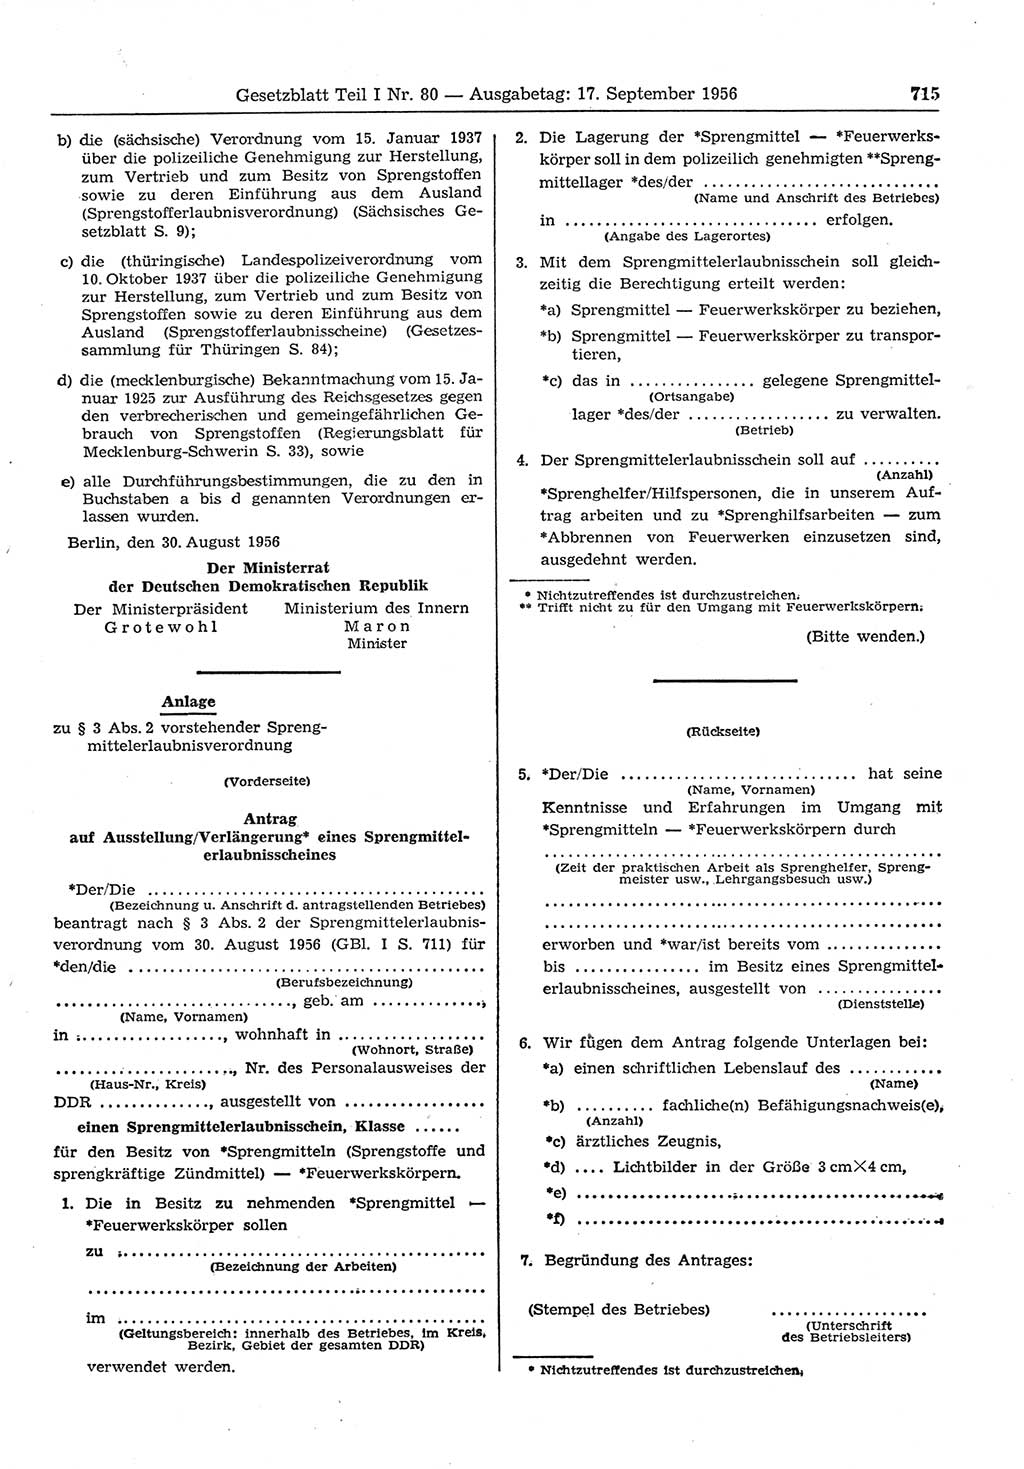 Gesetzblatt (GBl.) der Deutschen Demokratischen Republik (DDR) Teil Ⅰ 1956, Seite 715 (GBl. DDR Ⅰ 1956, S. 715)